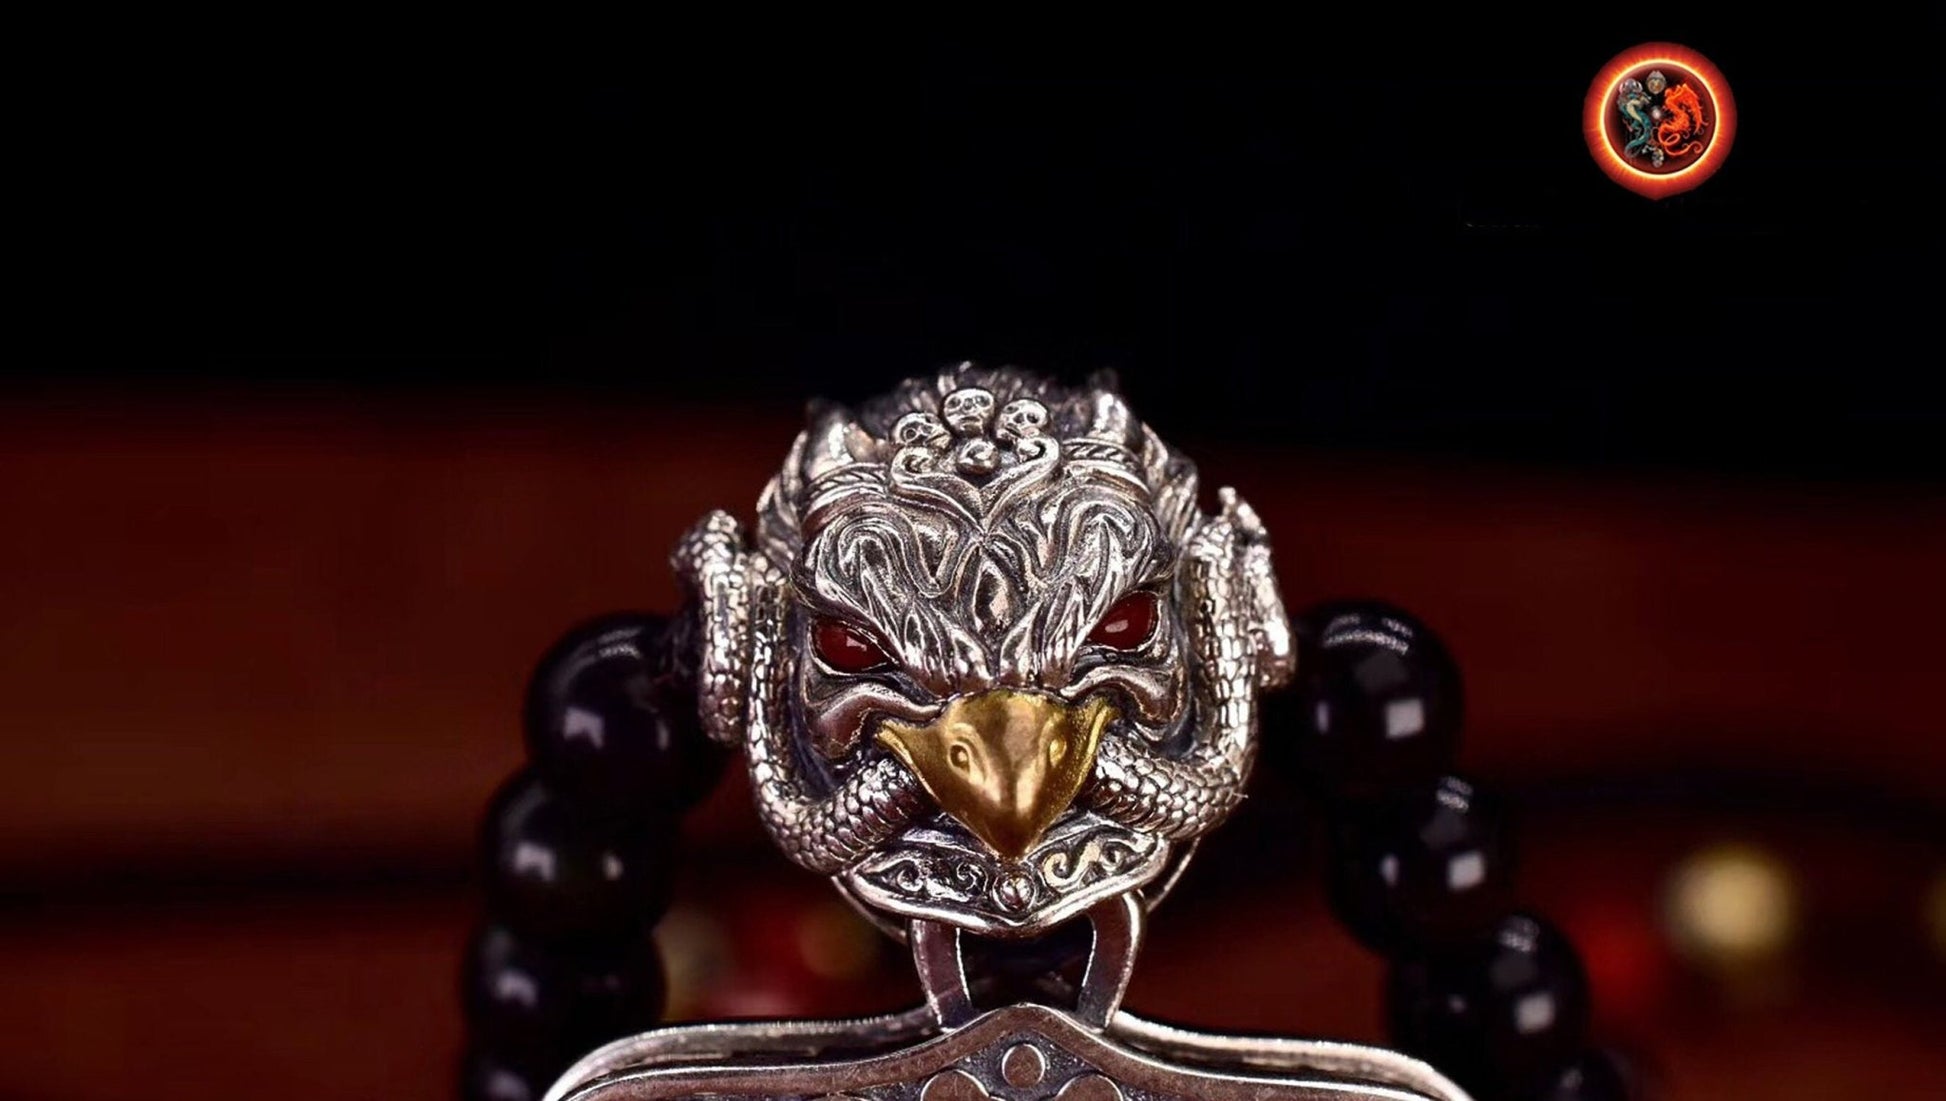 pendentif amulette de protection bouddhiste Bouddha Akashagarbha mala de prière et méditation 108 perles, argent 925 or 18K bélière Garuda - obsidian dragon